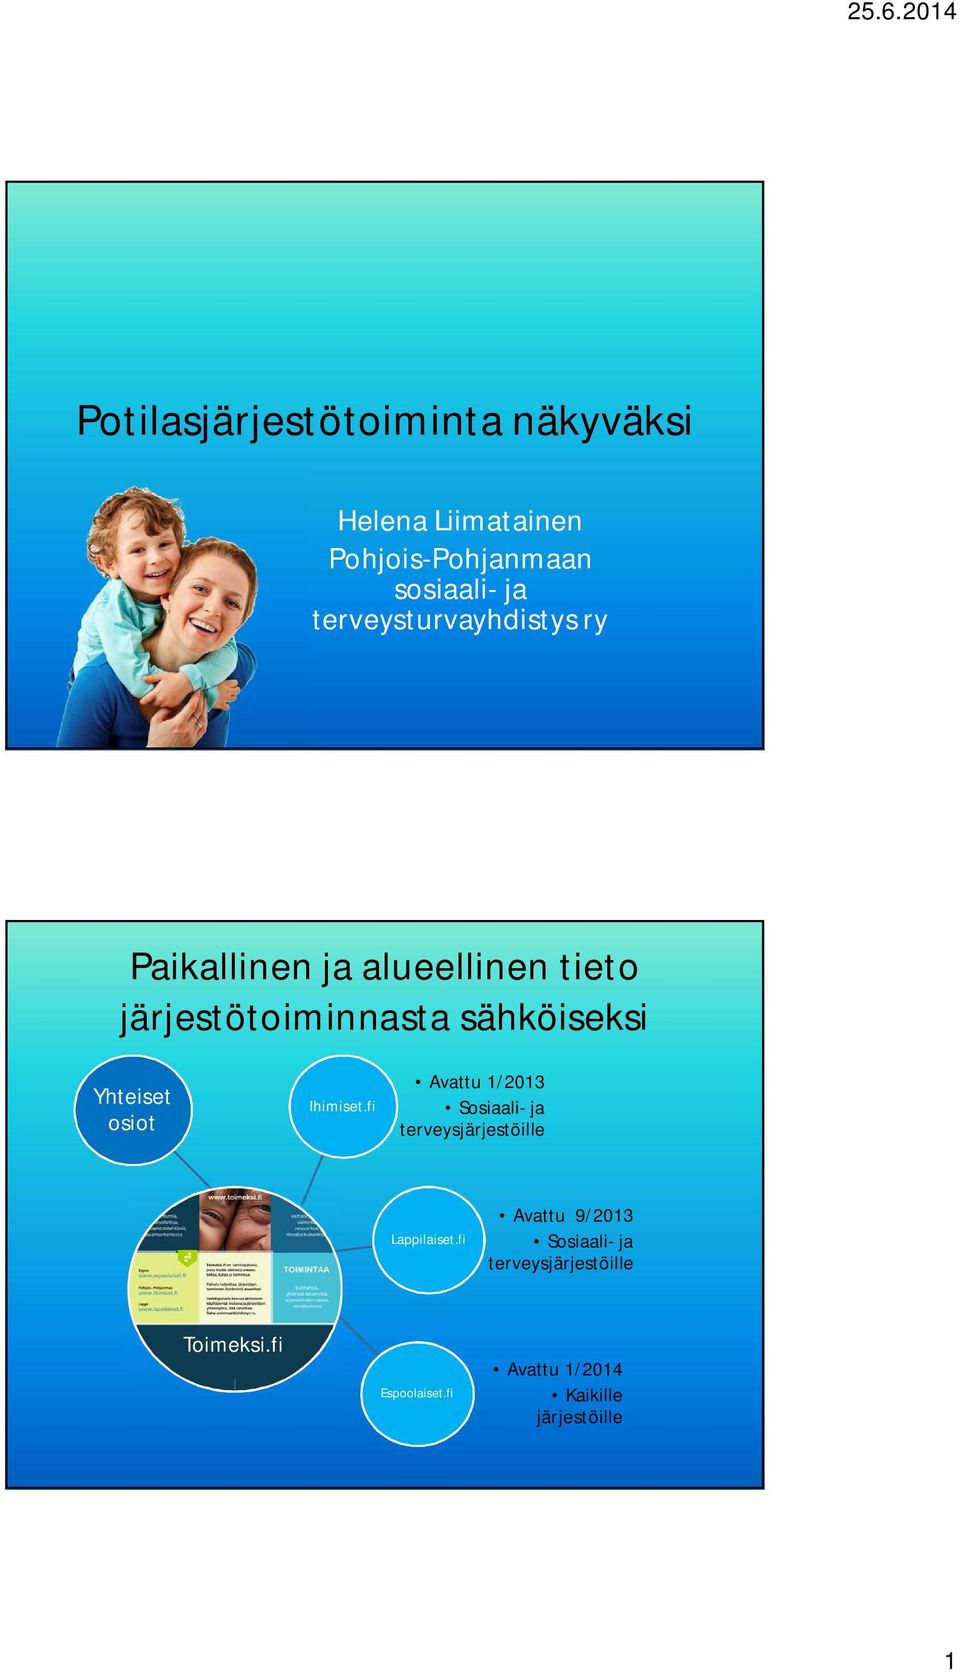 Yhteiset osiot Ihimiset.fi Avattu 1/2013 Sosiaali- ja terveysjärjestöille Lappilaiset.